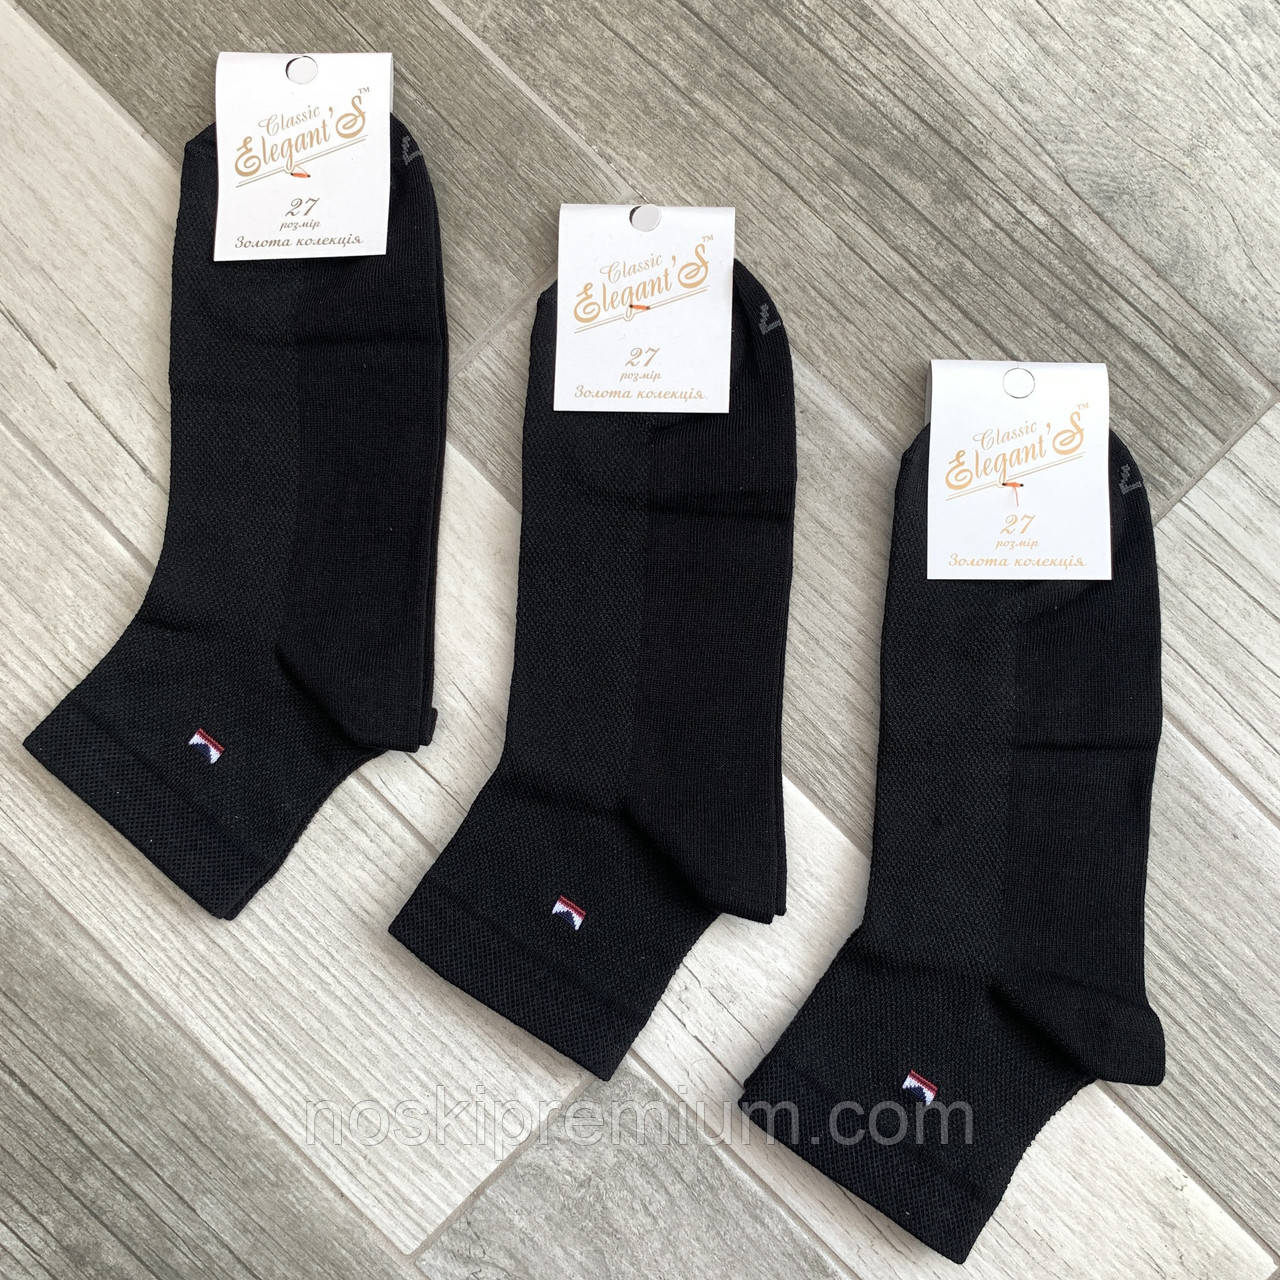 Шкарпетки чоловічі бавовна сітка середні Елегант - Elegant's Classic, 27 розмір, чорні, 01658